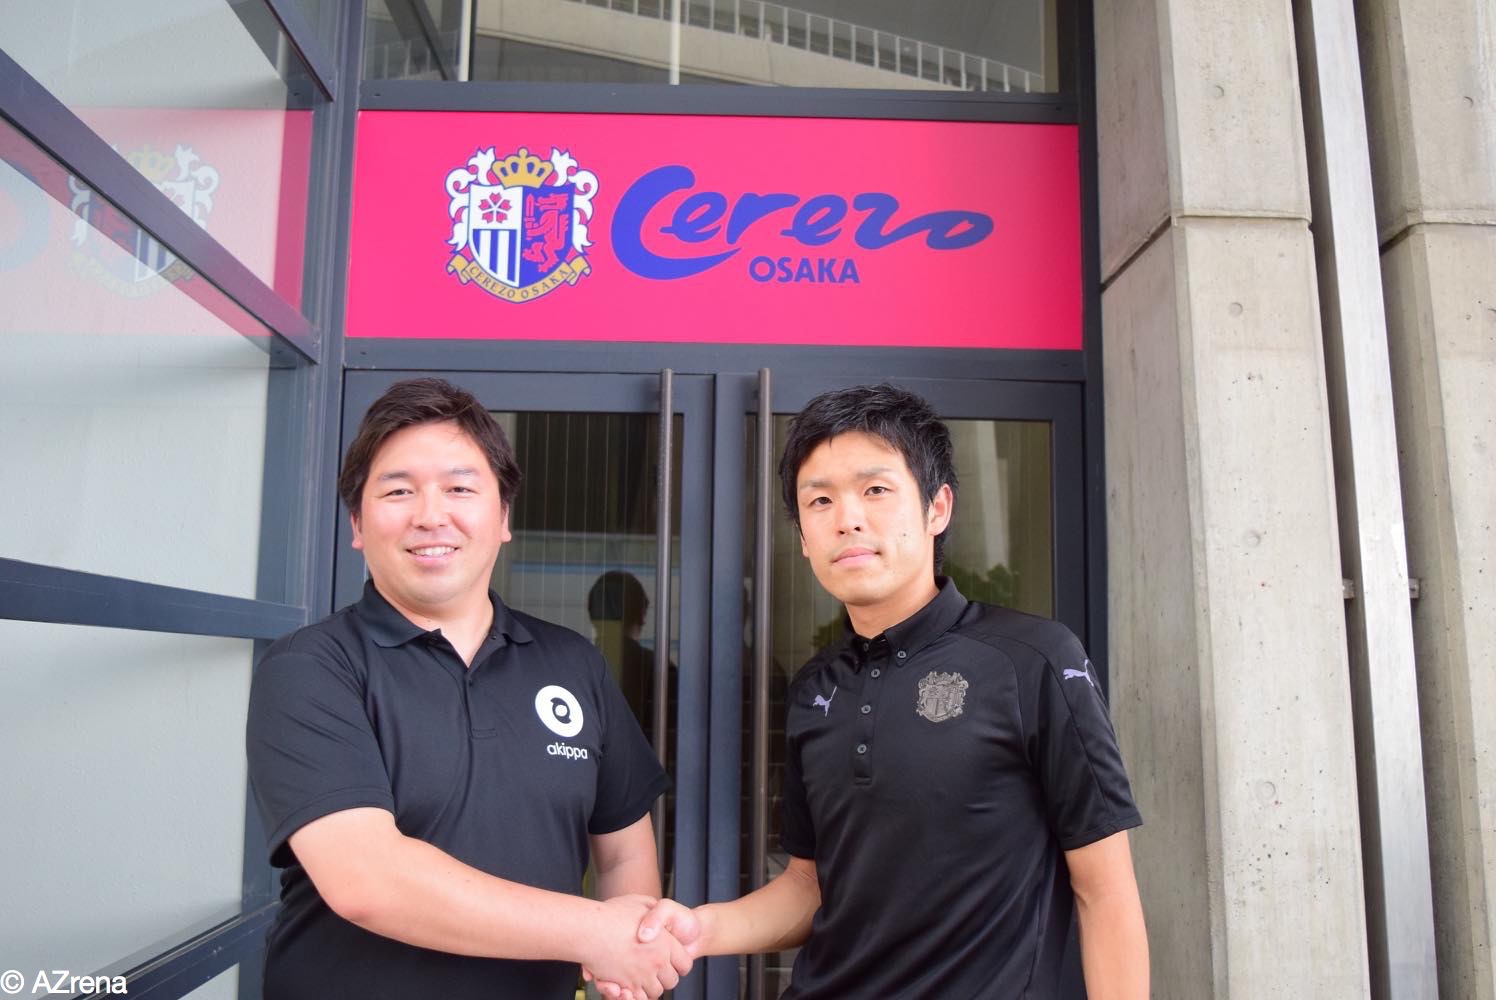 プロを諦めた２人がスポーツビジネスの世界で成す セレッソ大阪の 駐車場革命 とは Azrena